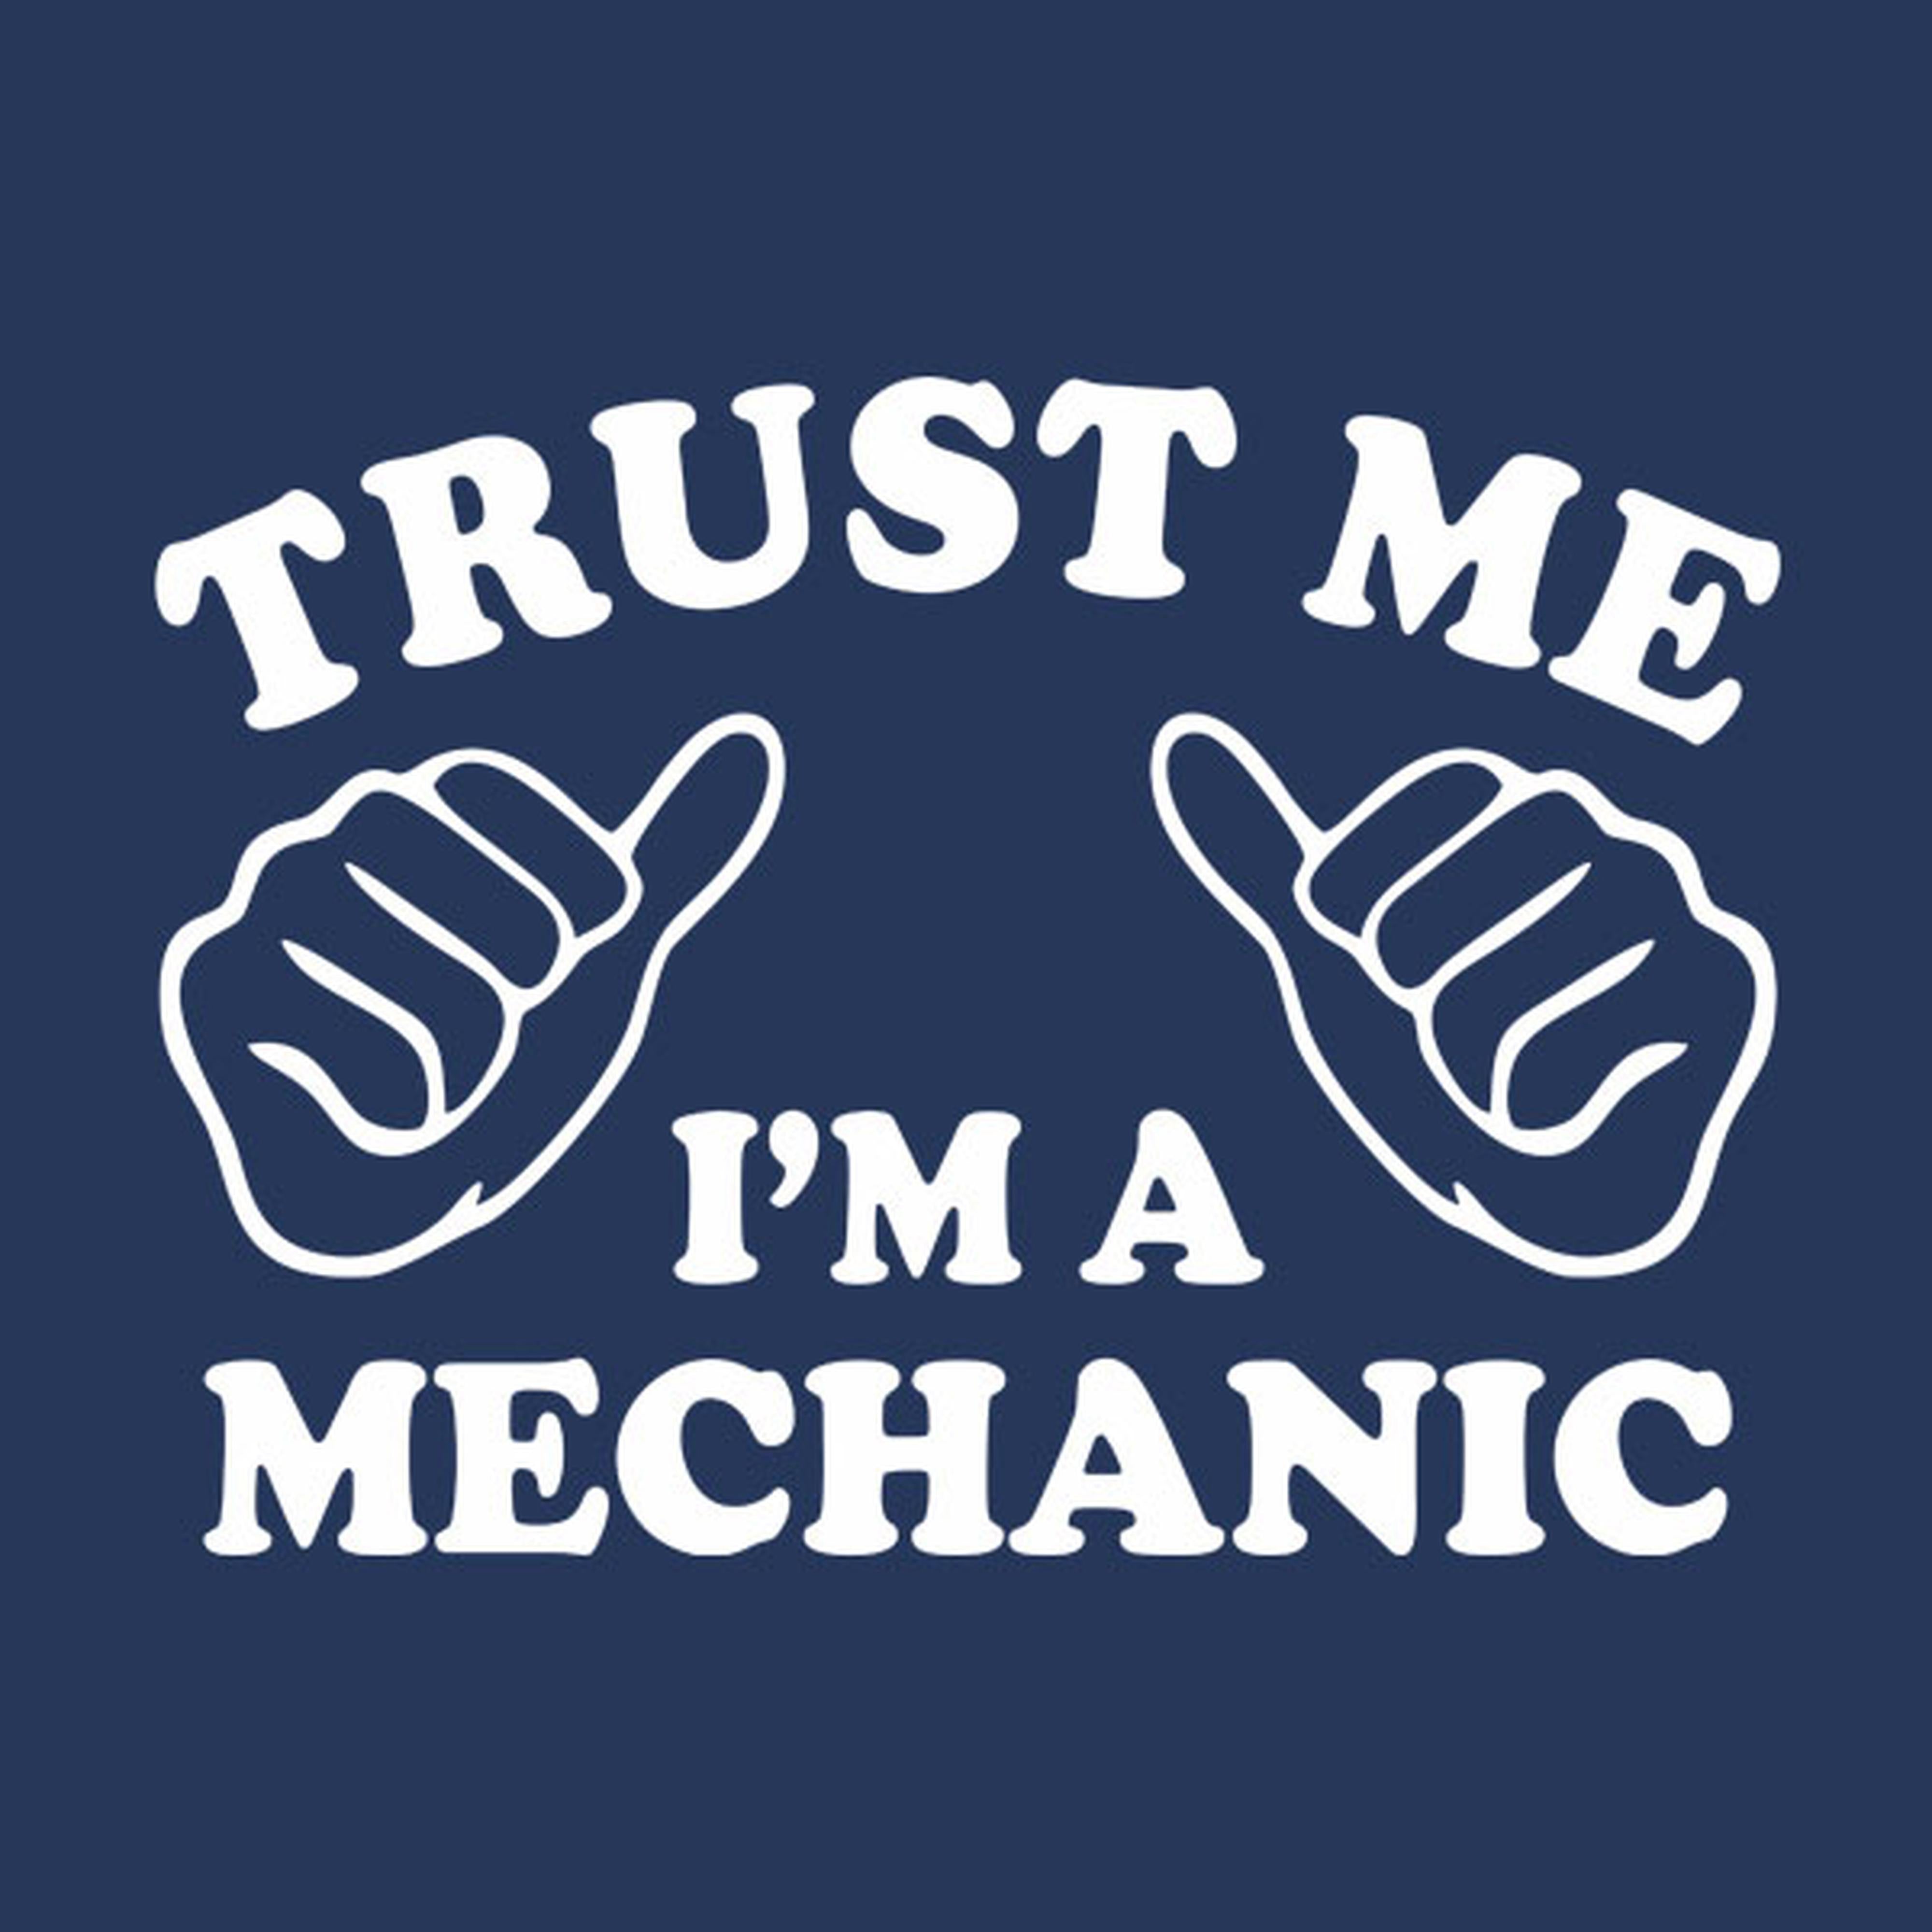 Trust me - I am a mechanic - T-shirt